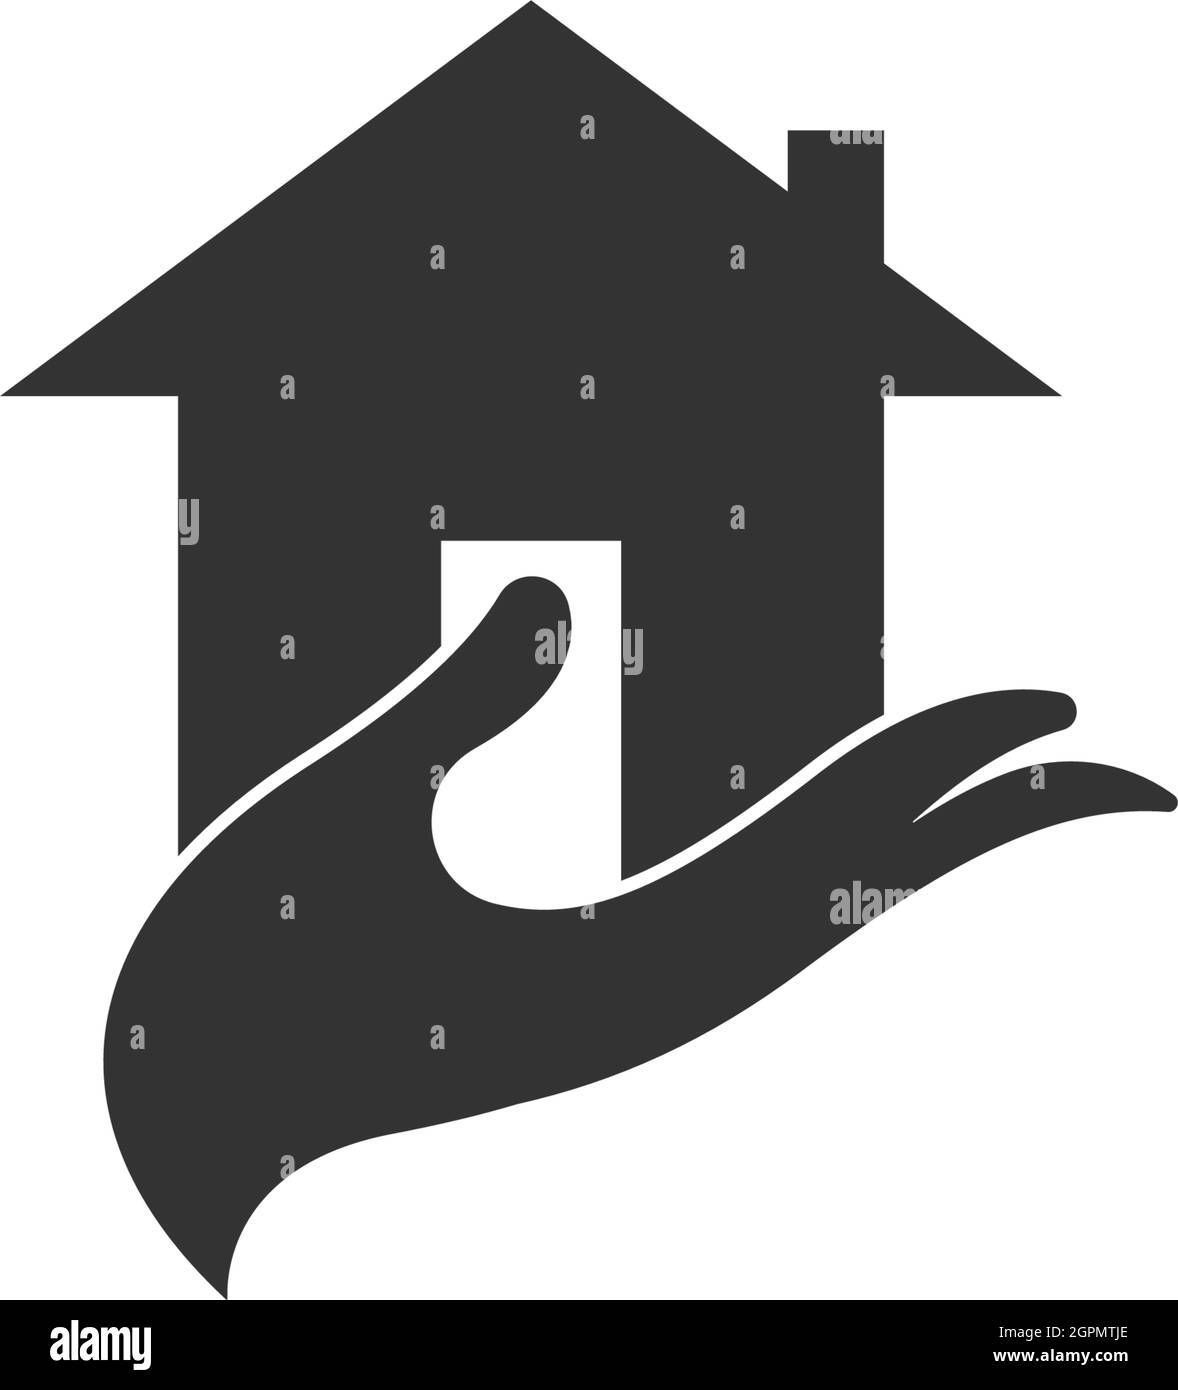 House icon logo simple design template vector Stock Vector